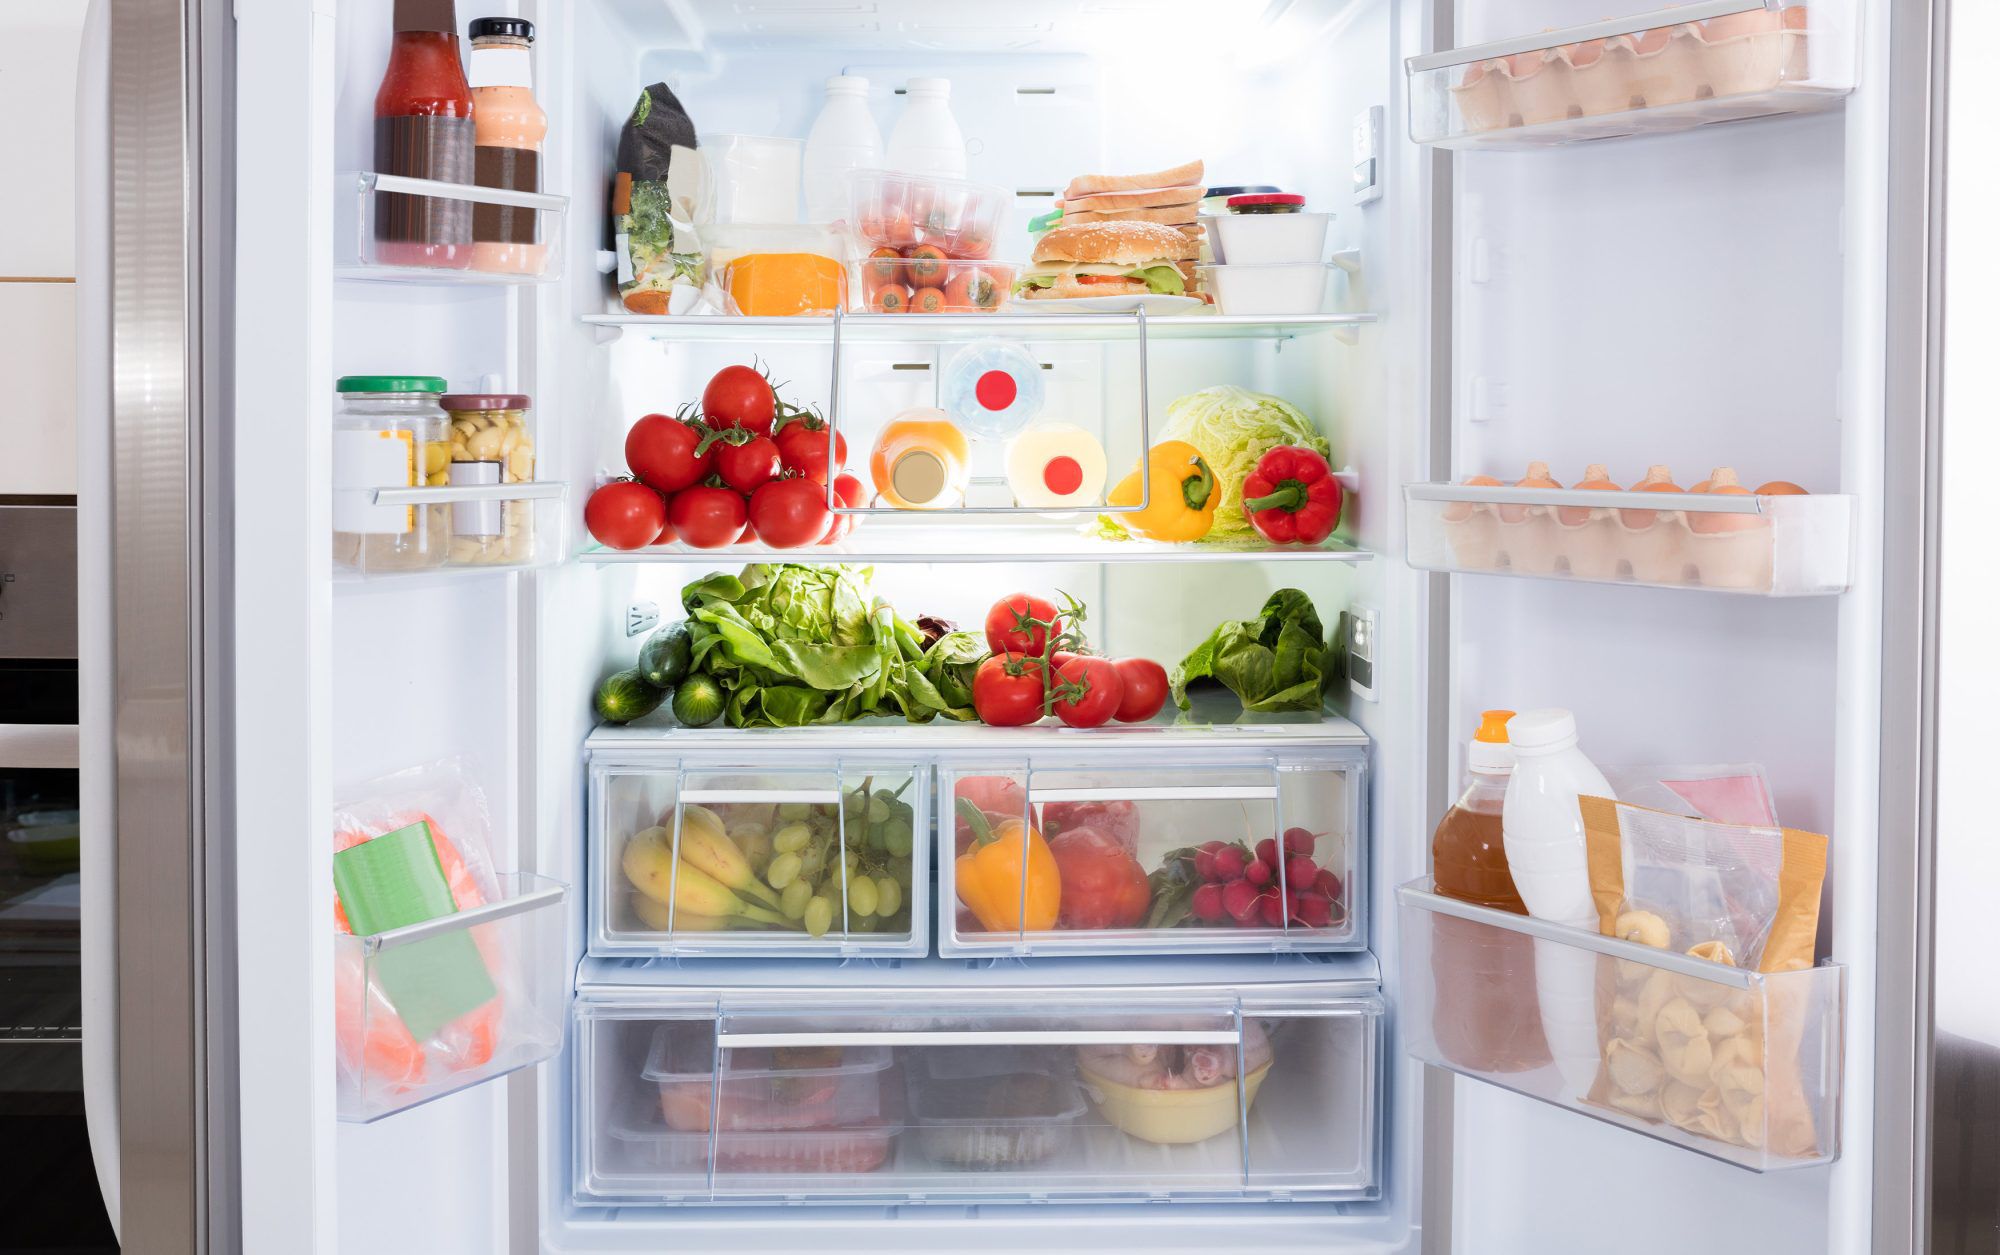 How To Organize Refrigerator